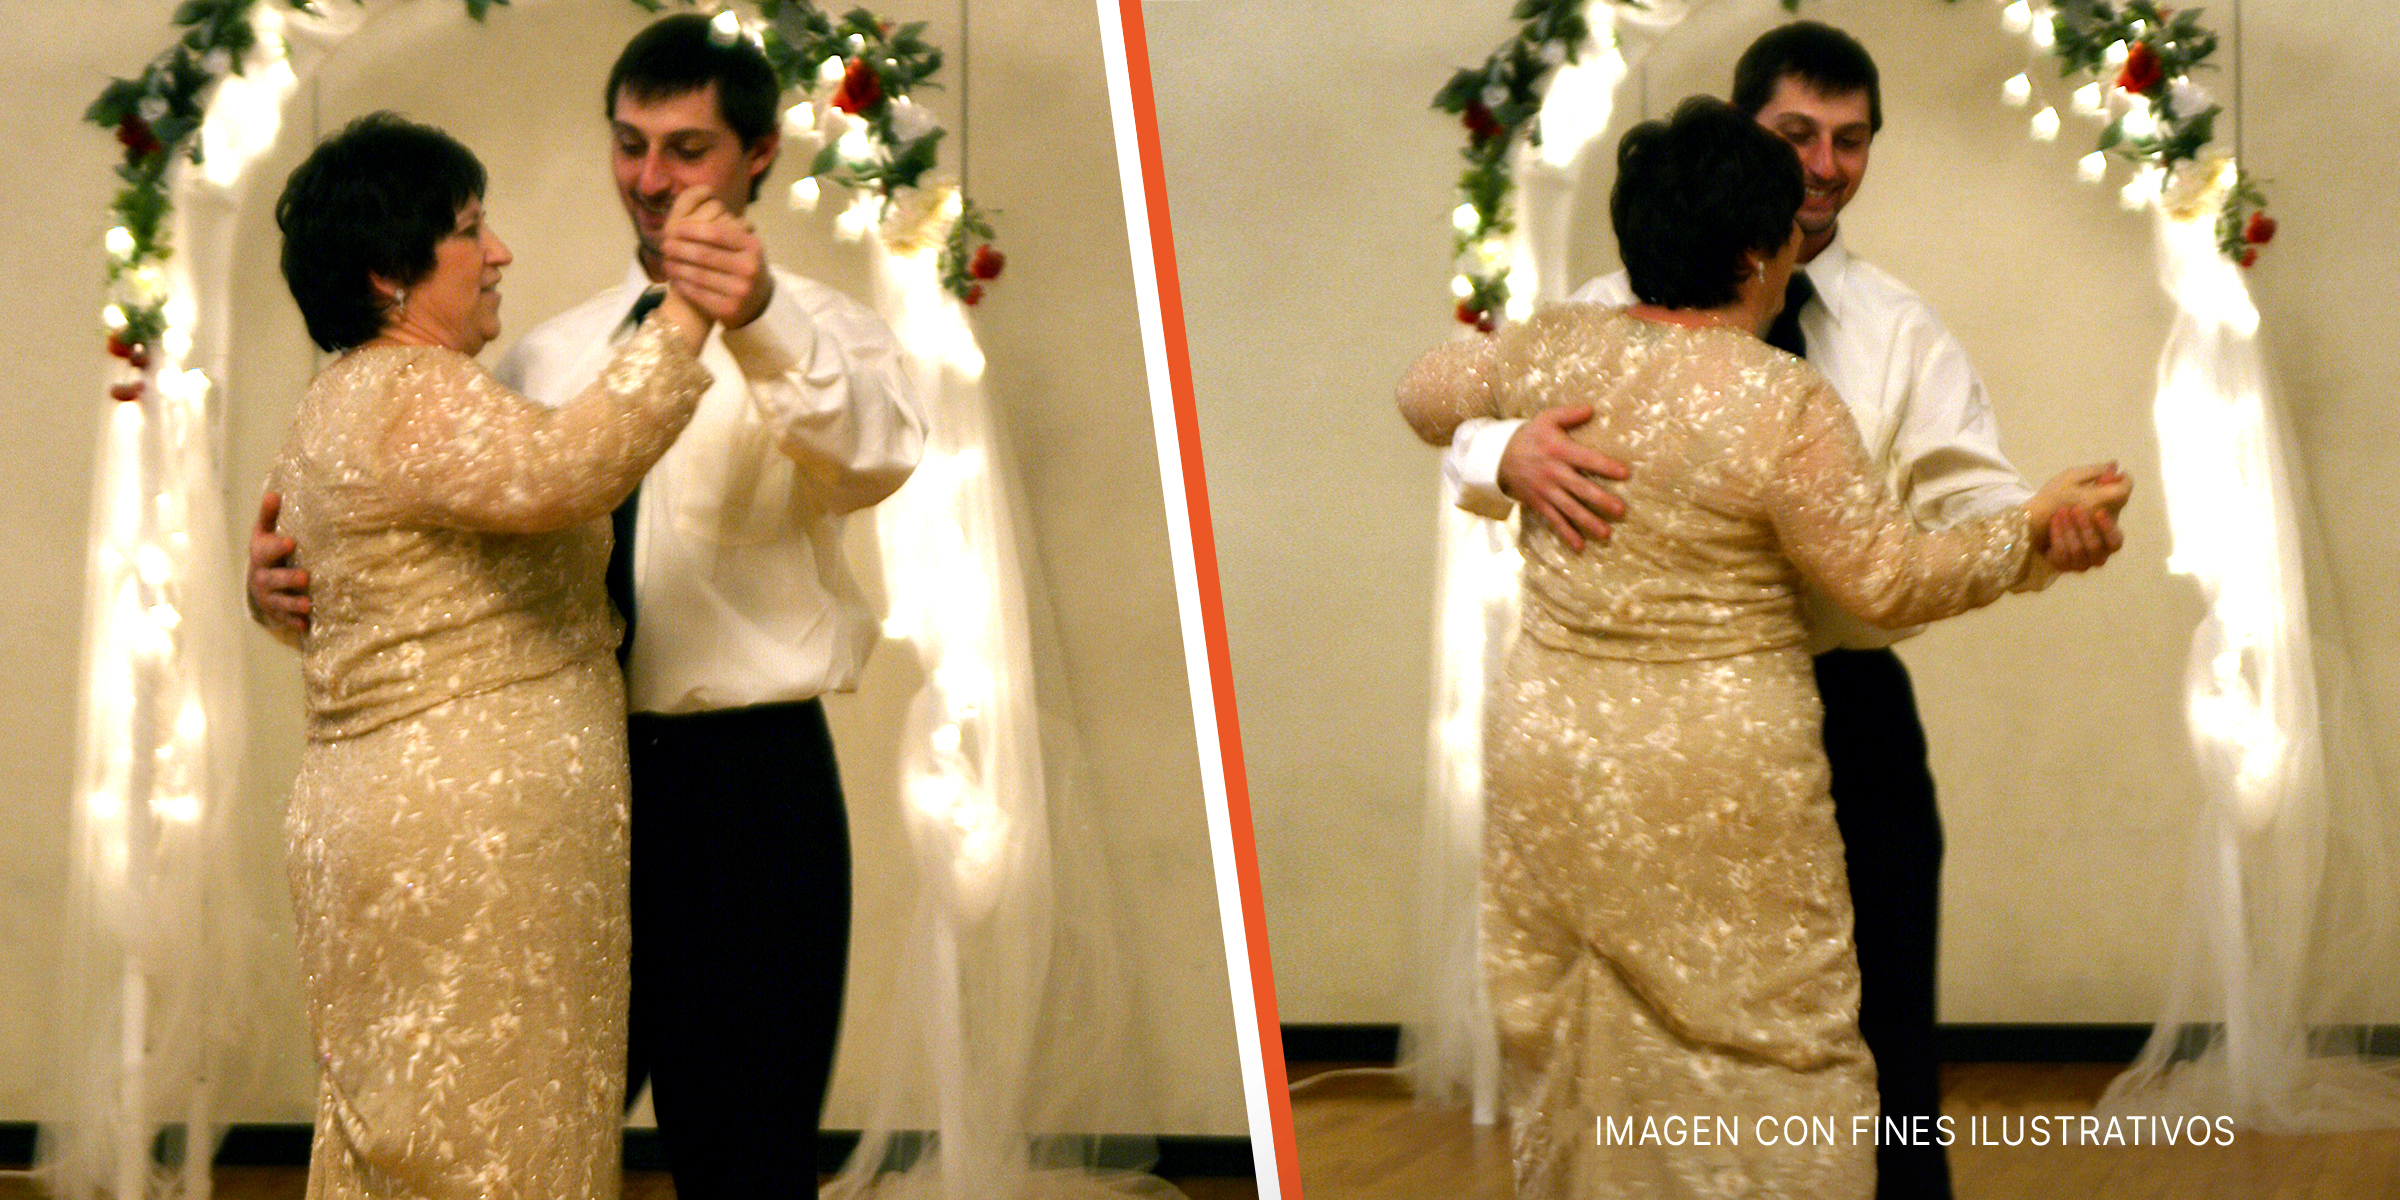 Un hijo compartiendo un baile con su madre en su boda | Fuente: Flickr.com/quinn.anya (CC BY-SA 2.0)